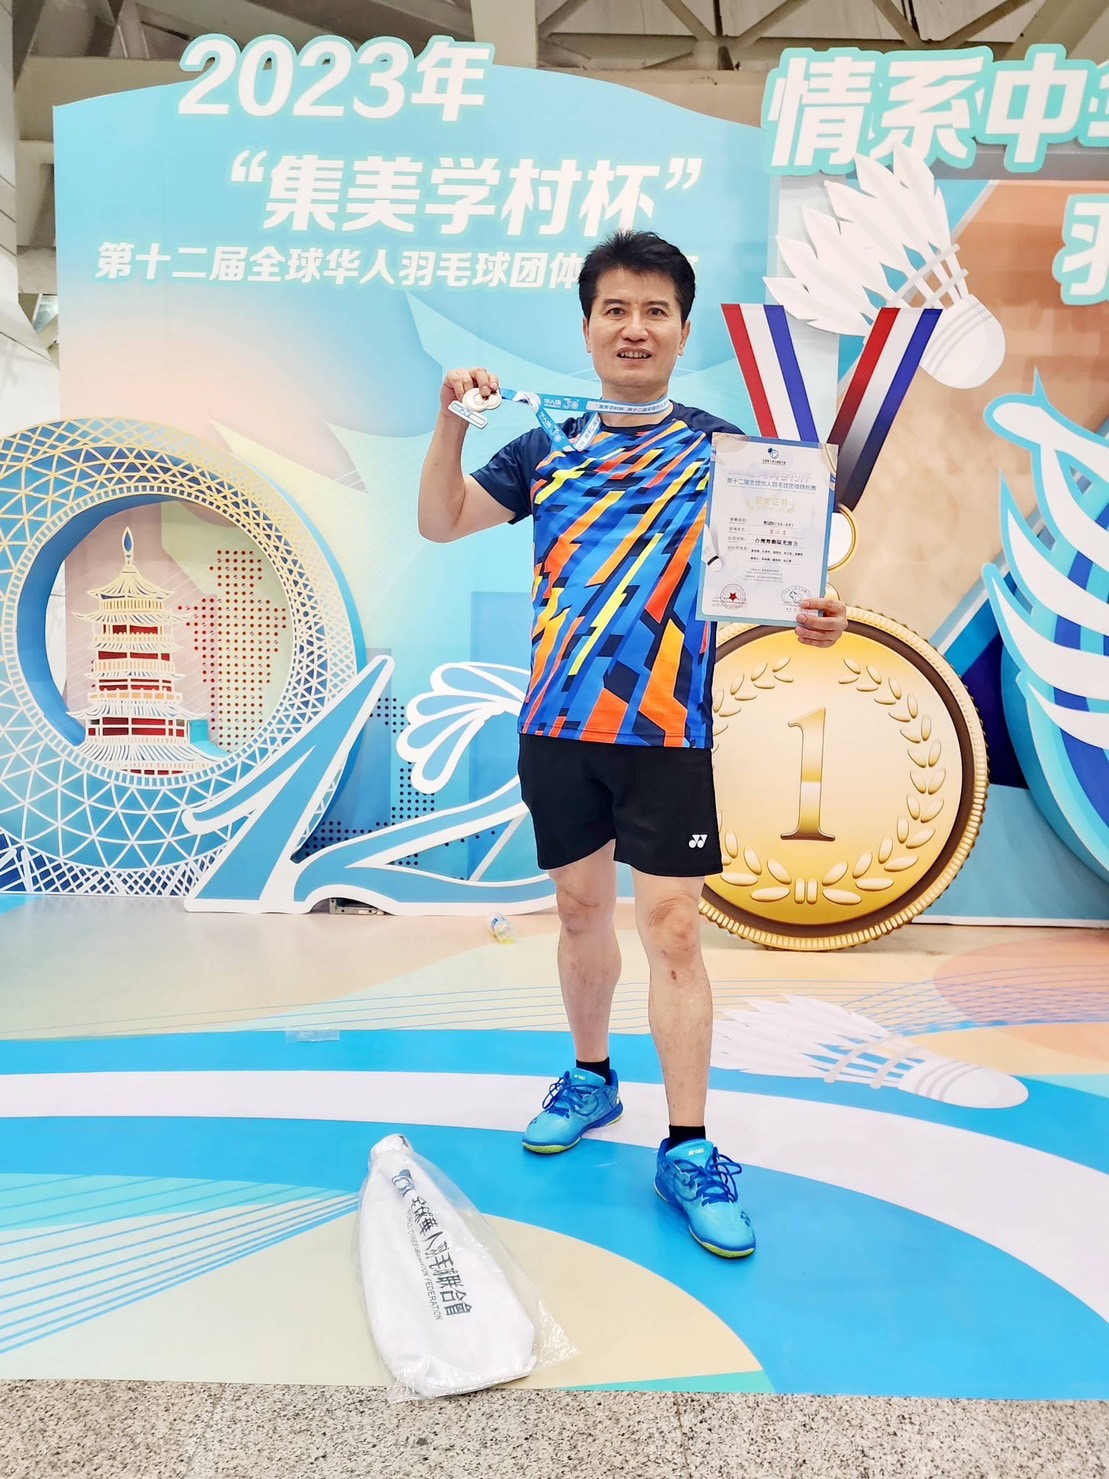 謝昆榮同學參加2023年「集美學村杯」第十二屆全球華人羽毛球團體錦標賽榮獲男雙團體亞軍、混雙團體亞軍